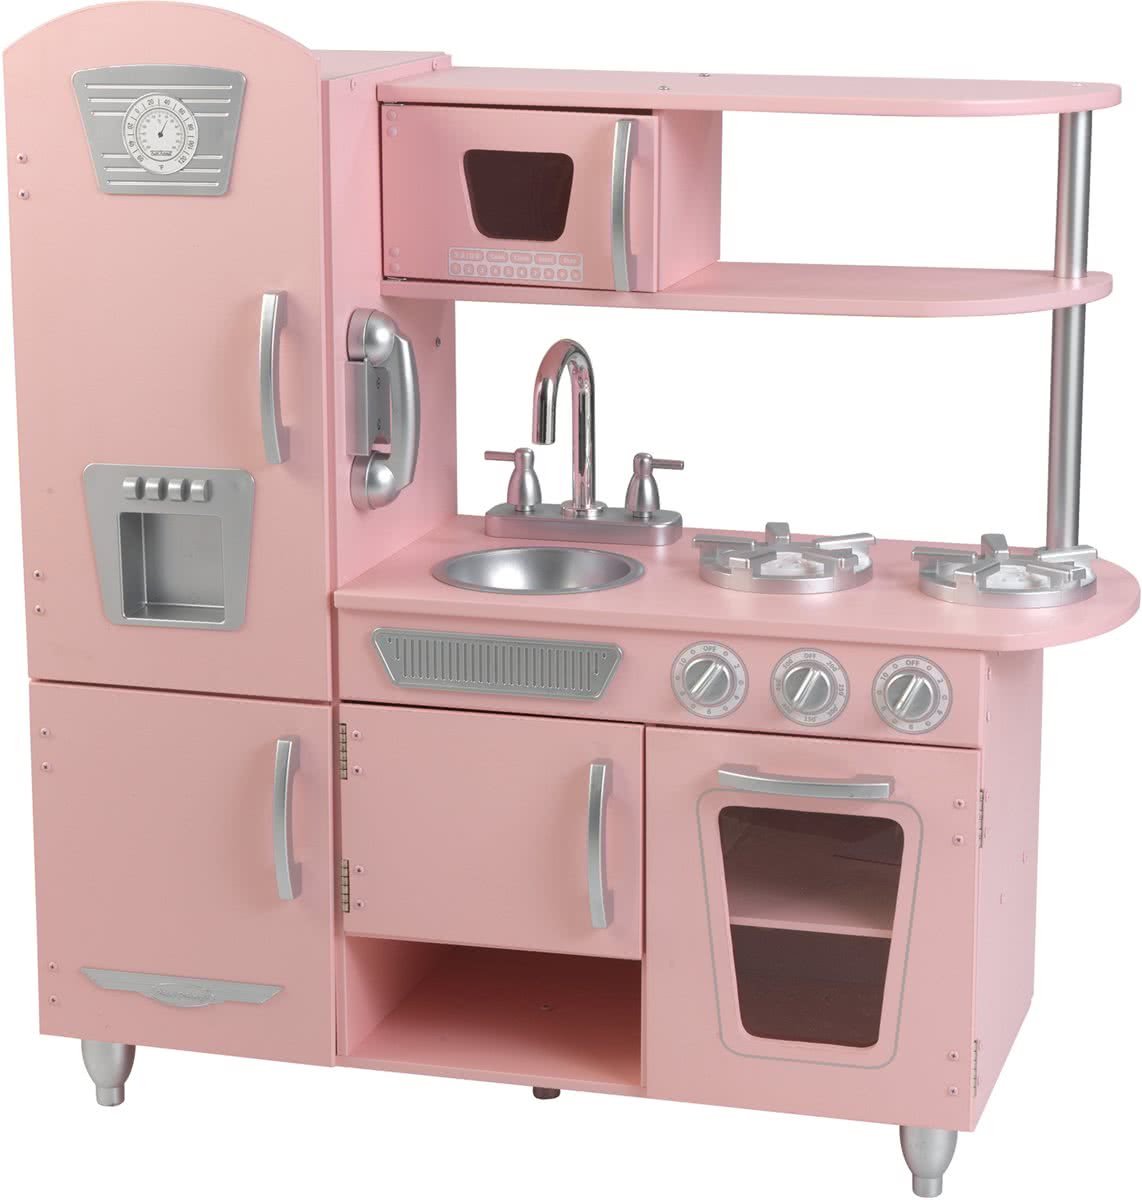 KidKraft Vintage Houten Keukentje - Roze